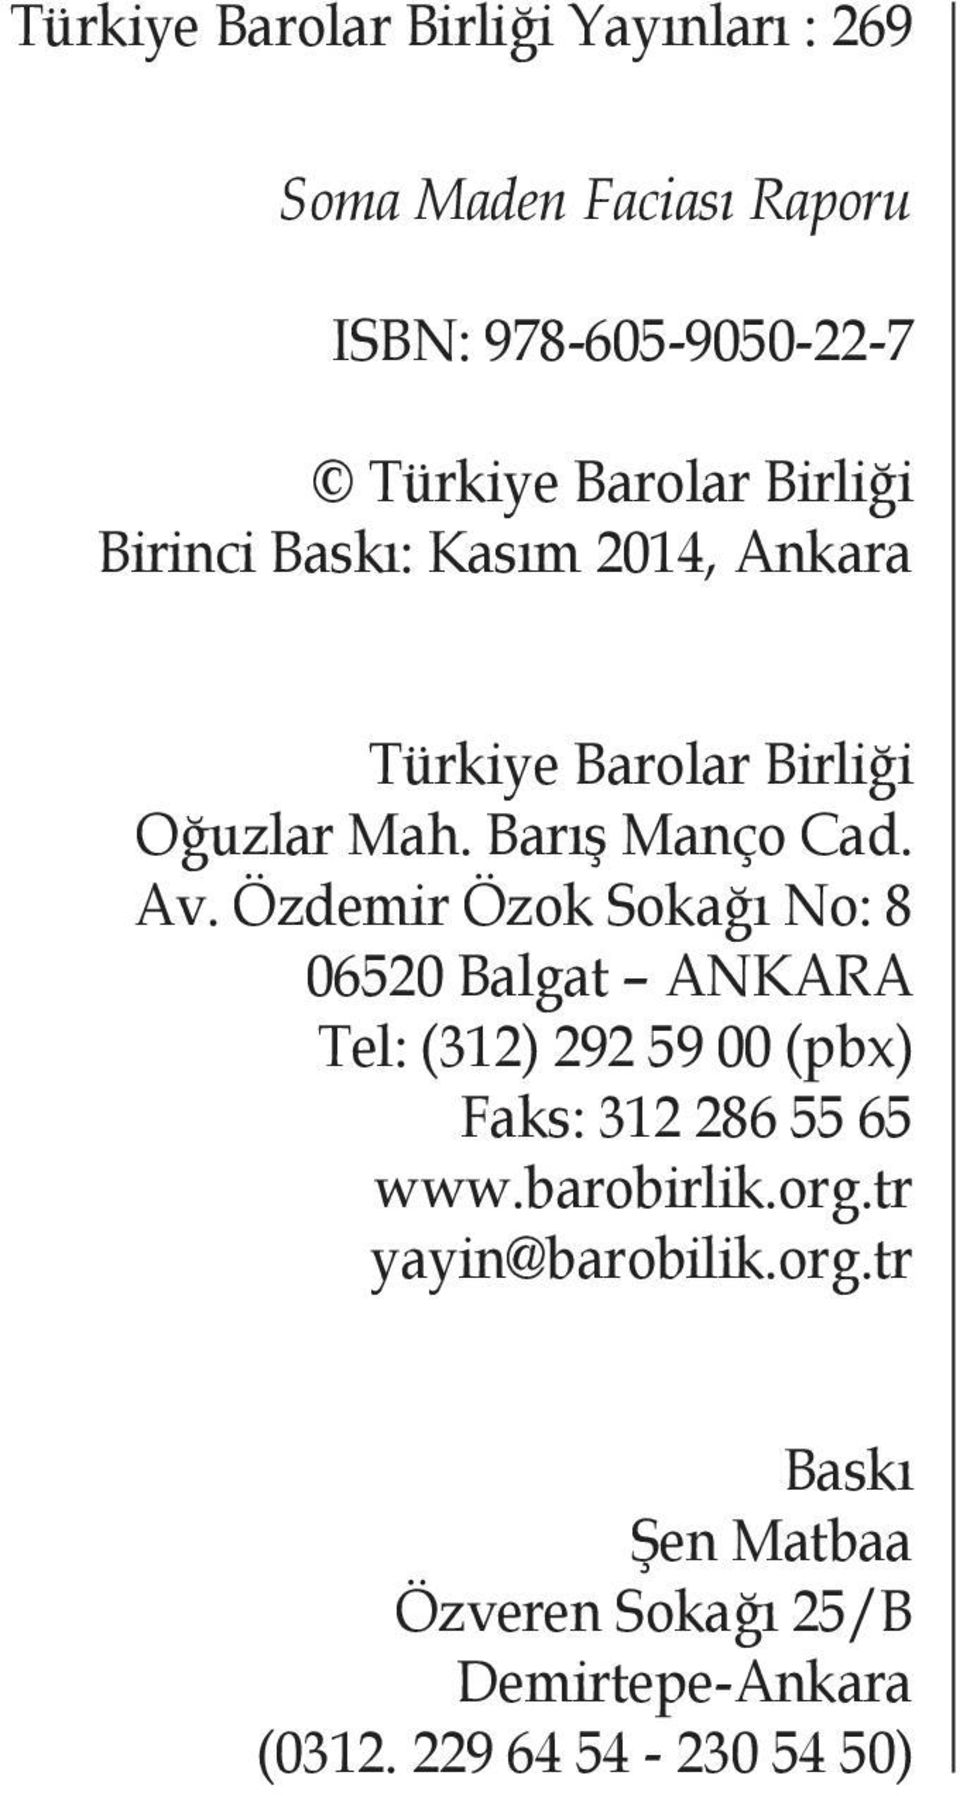 Özdemir Özok Sokağı No: 8 06520 Balgat ANKARA Tel: (312) 292 59 00 (pbx) Faks: 312 286 55 65 www.